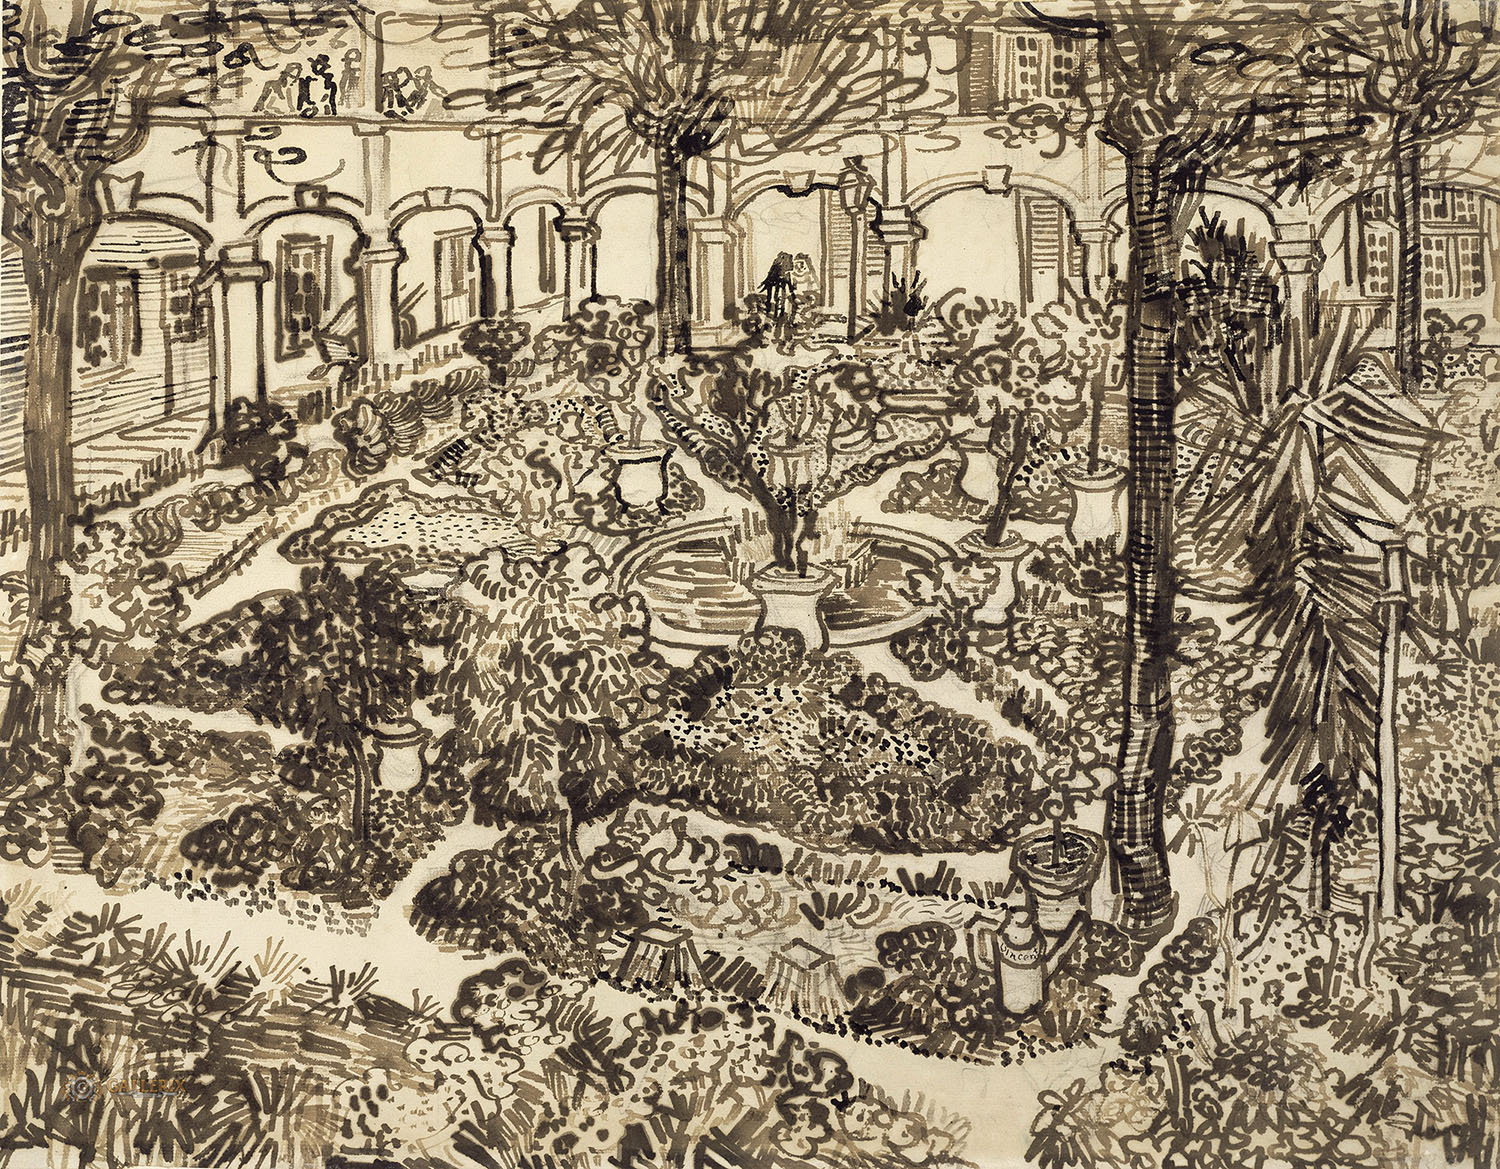 Винсент Ван Гог. "Больничный сад в Арле". 1889. Музей Ван Гога, Амстердам.